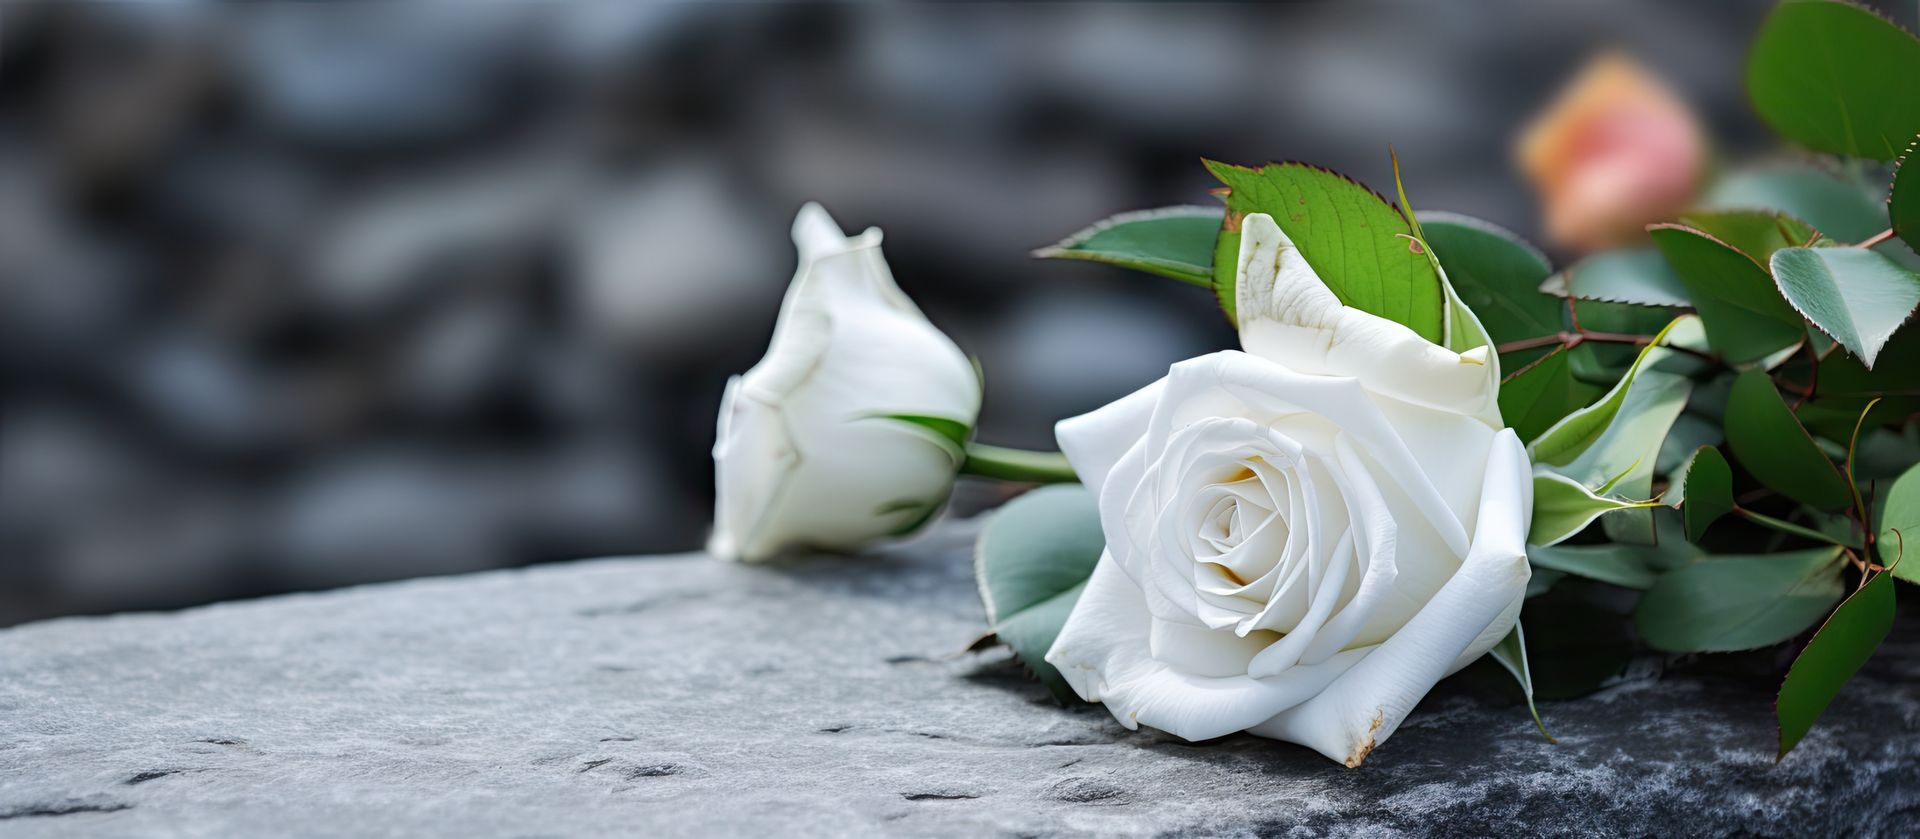 Roses blanches déposées pour un proche décédé